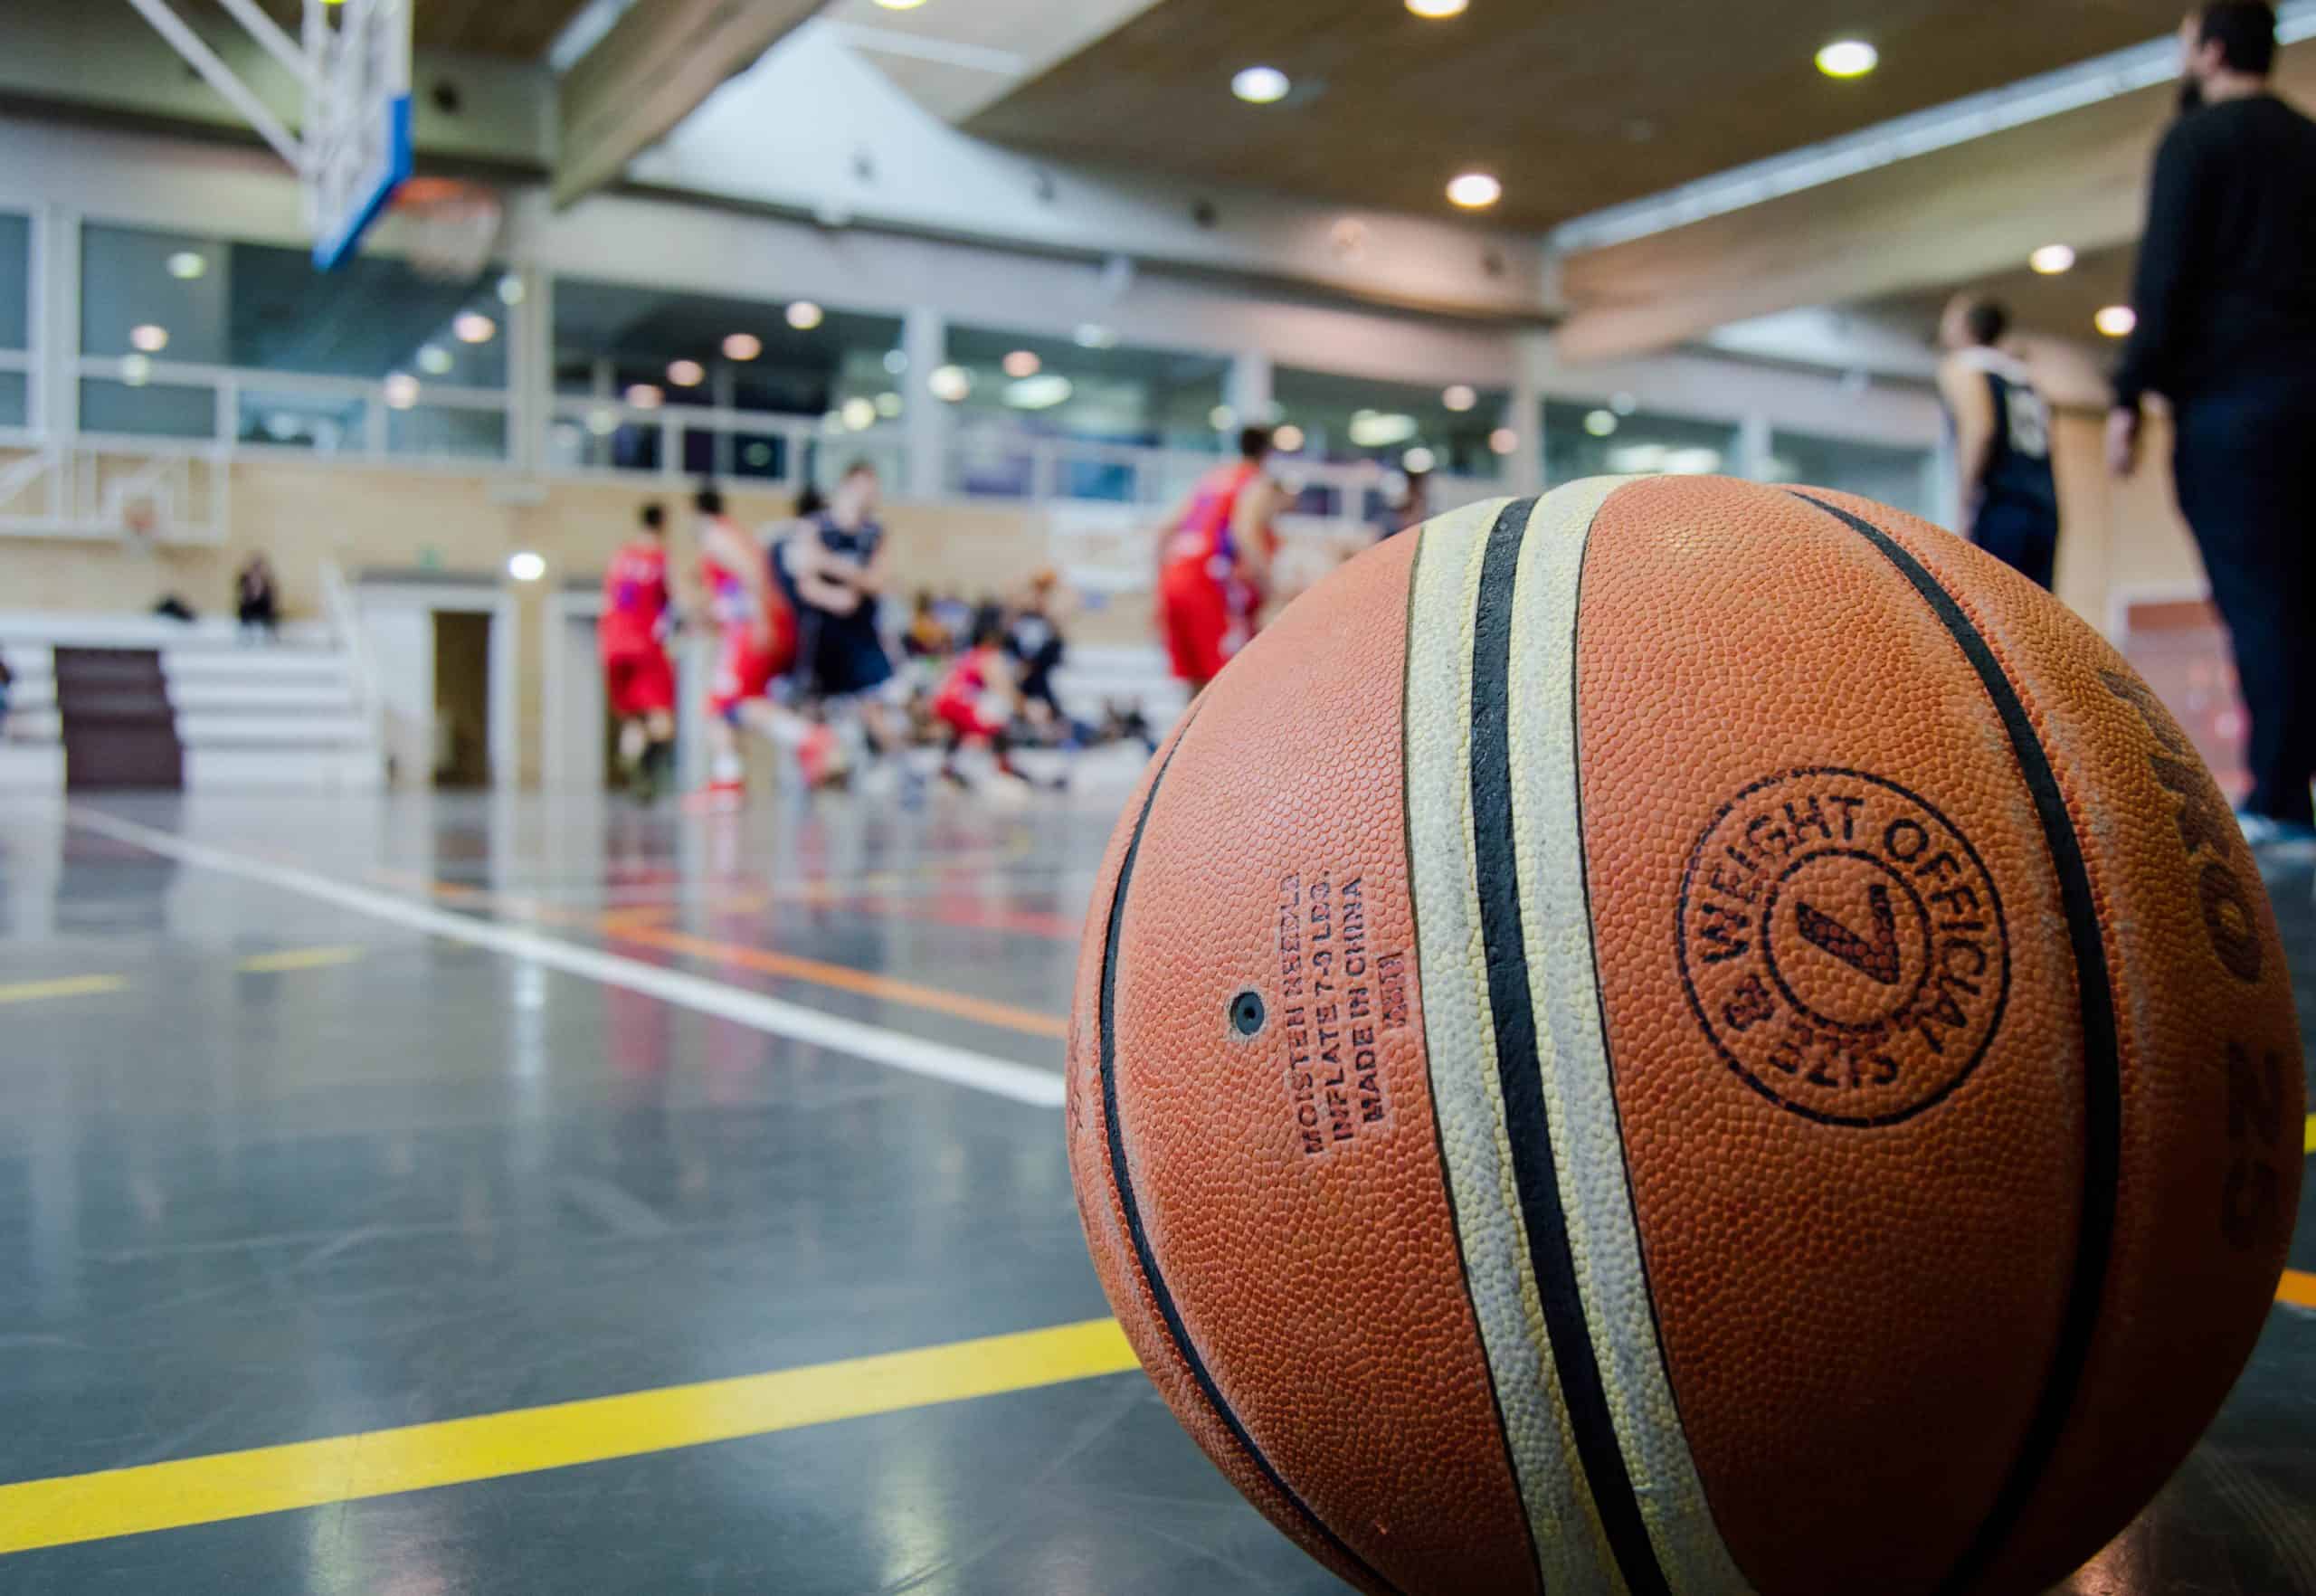 Kolejny krok w kierunku rozwoju świętokrzyskiego basketu. W tym tygodniu startuje CKNBA!